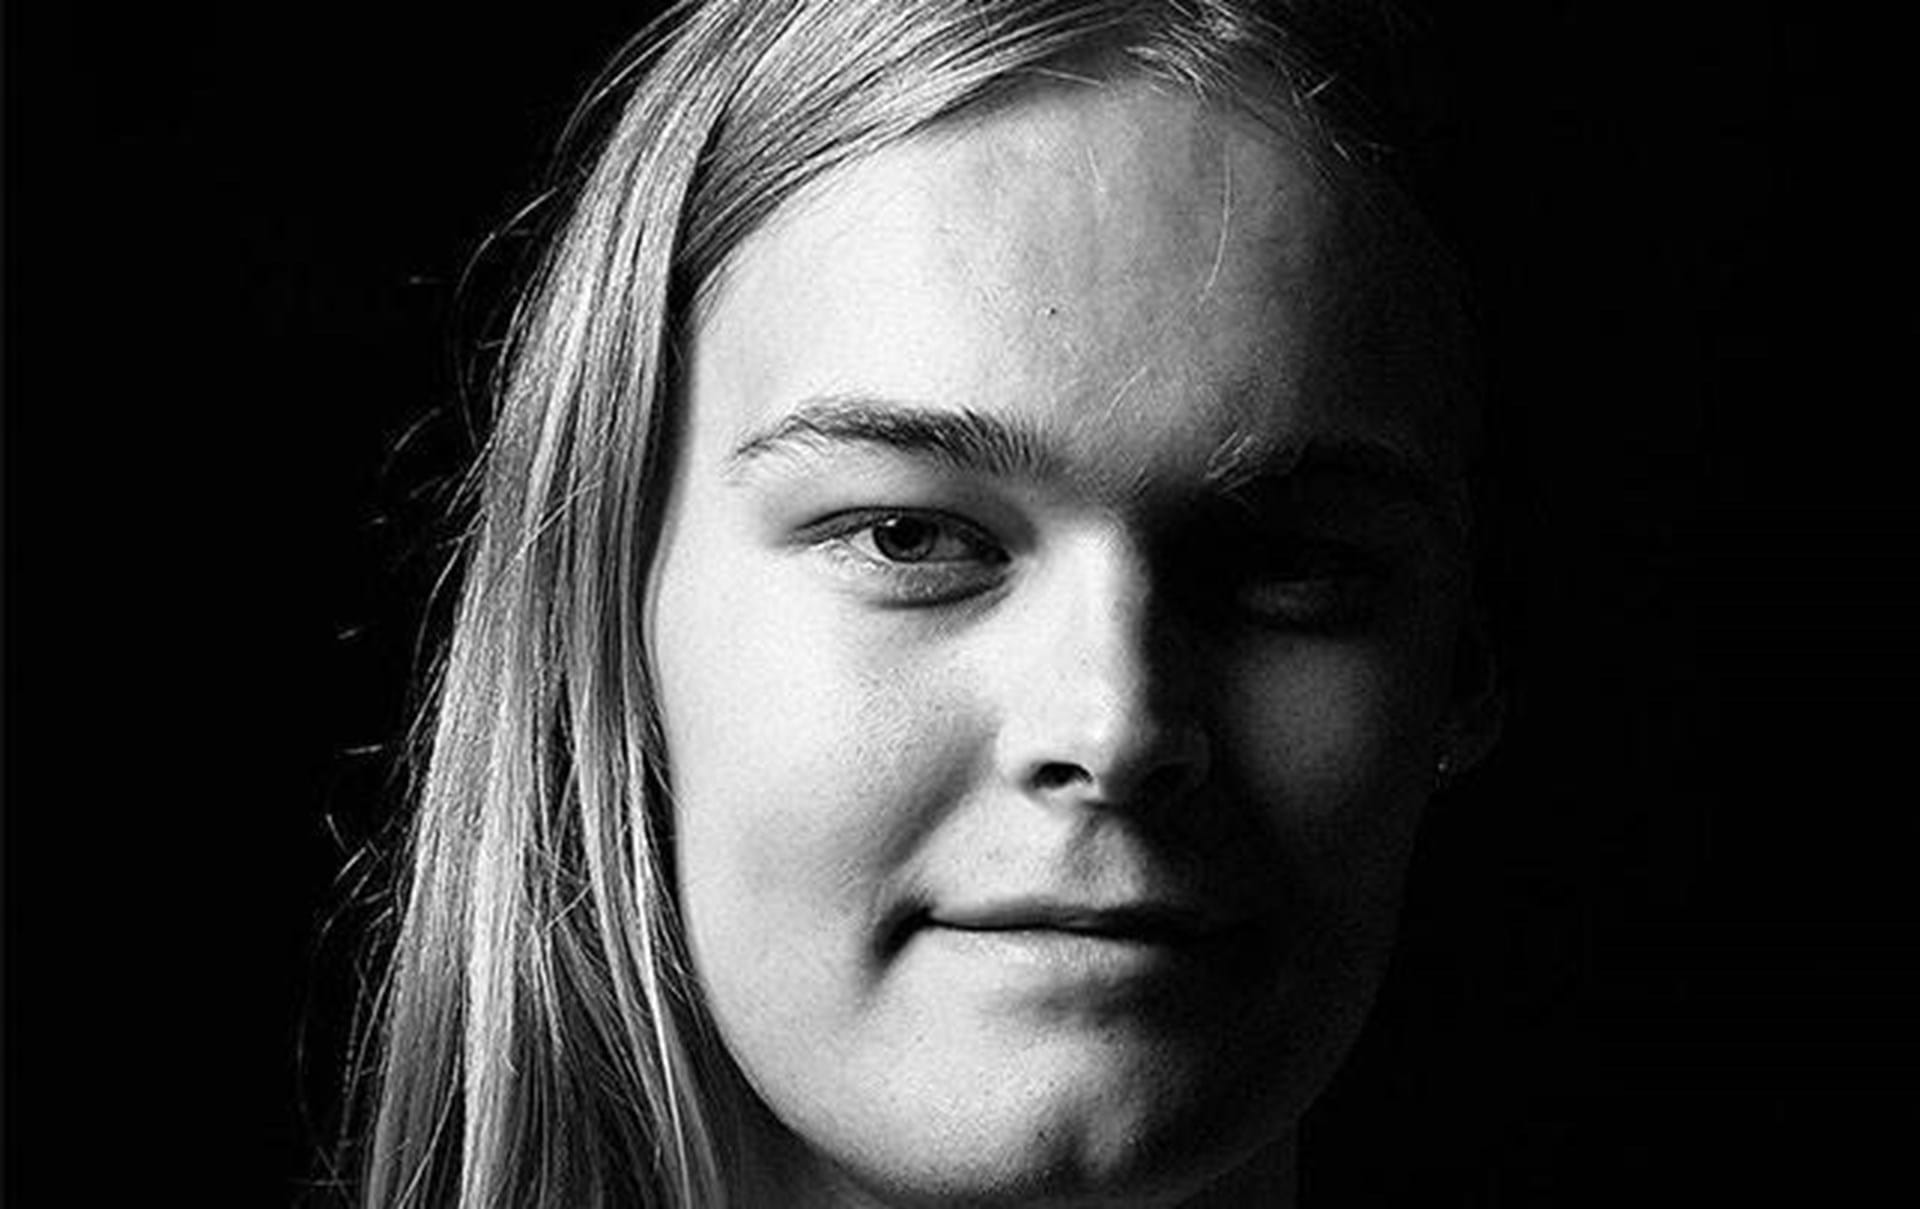 Ejendomsret Gå ud vandrerhjemmet Jeg indser det, da jeg er 18 år. For helvede, jeg er trans.” - ALT.dk